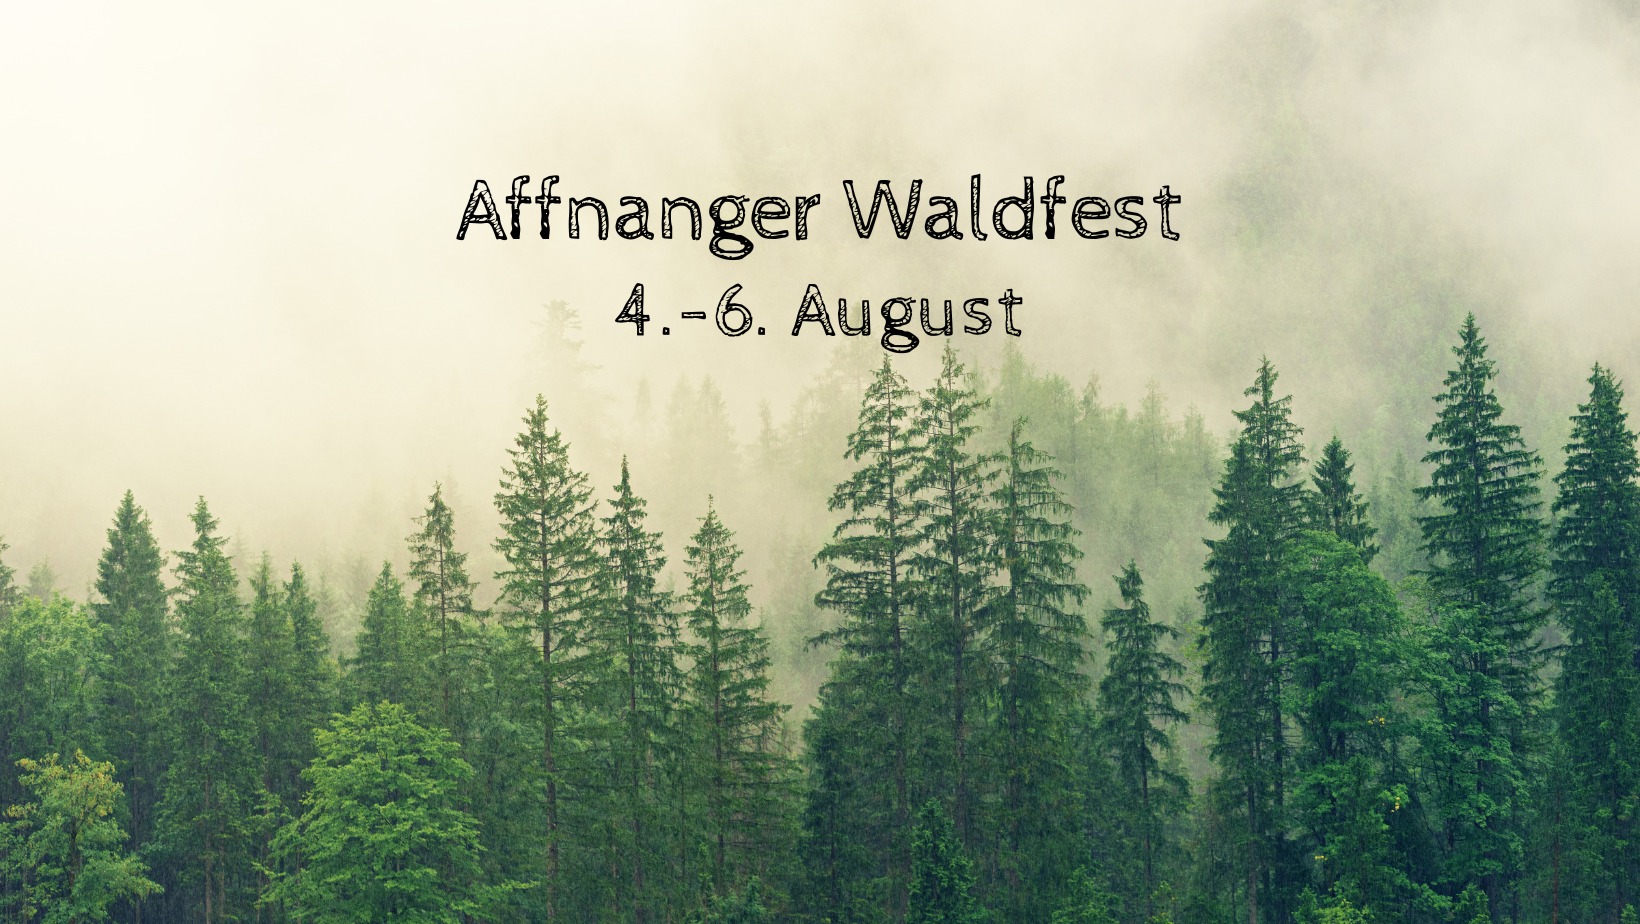 Affnanger Waldfest